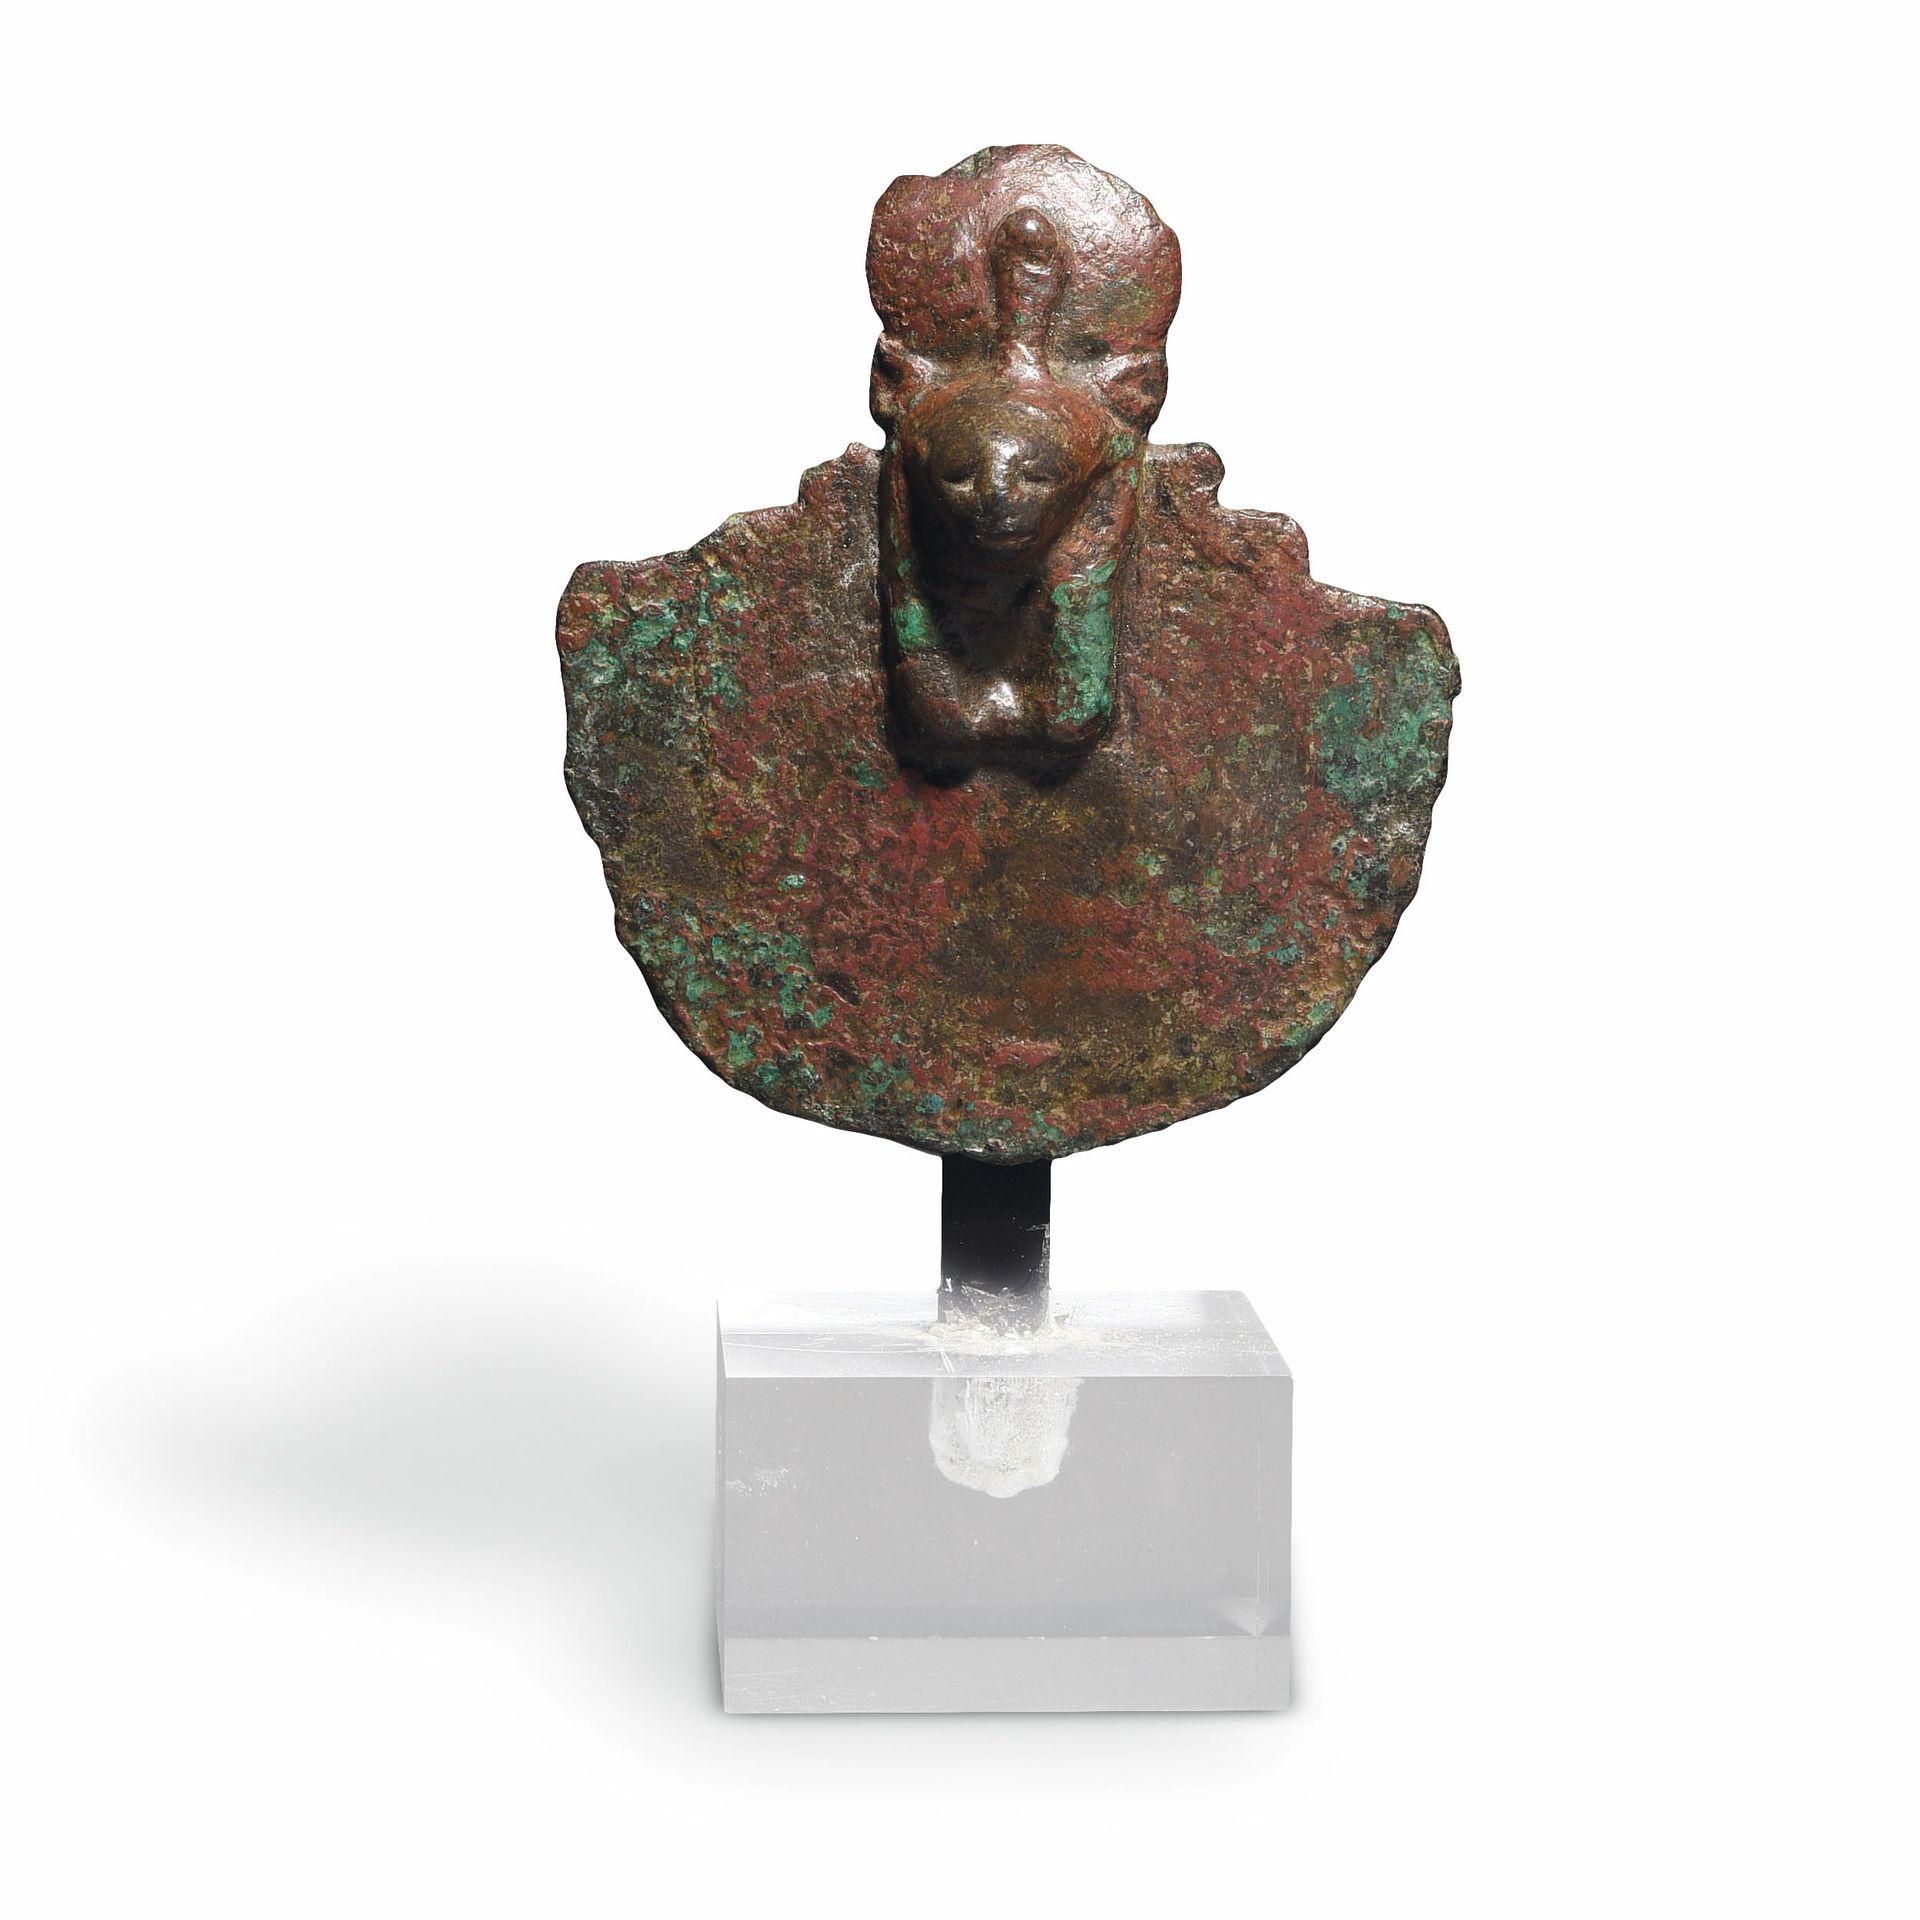 Null LA ÉGIDA DE SEKHMET

Egipto, período tardío, 664-332 a.C. 

Bronce con páti&hellip;